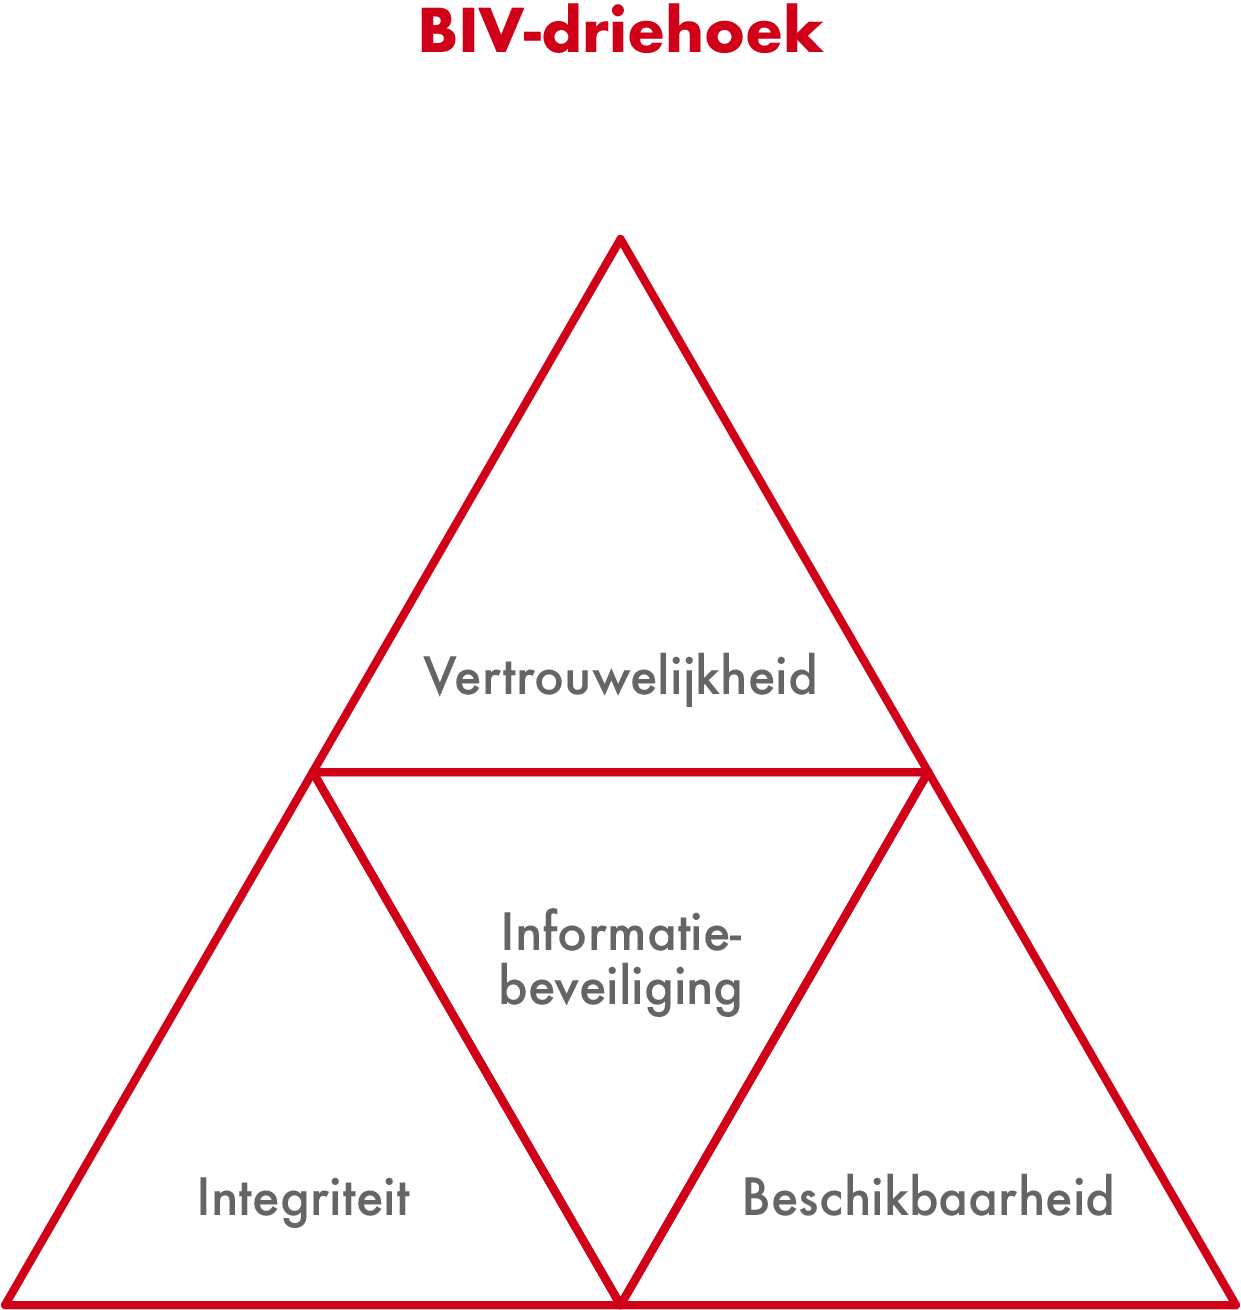 de BIV driehoek bestaat uit de factoren Beschikbaarheid, Integriteit en Vertrouwelijkheid. De BIV driehoek wordt in het Engels de CIA triad genoemd.